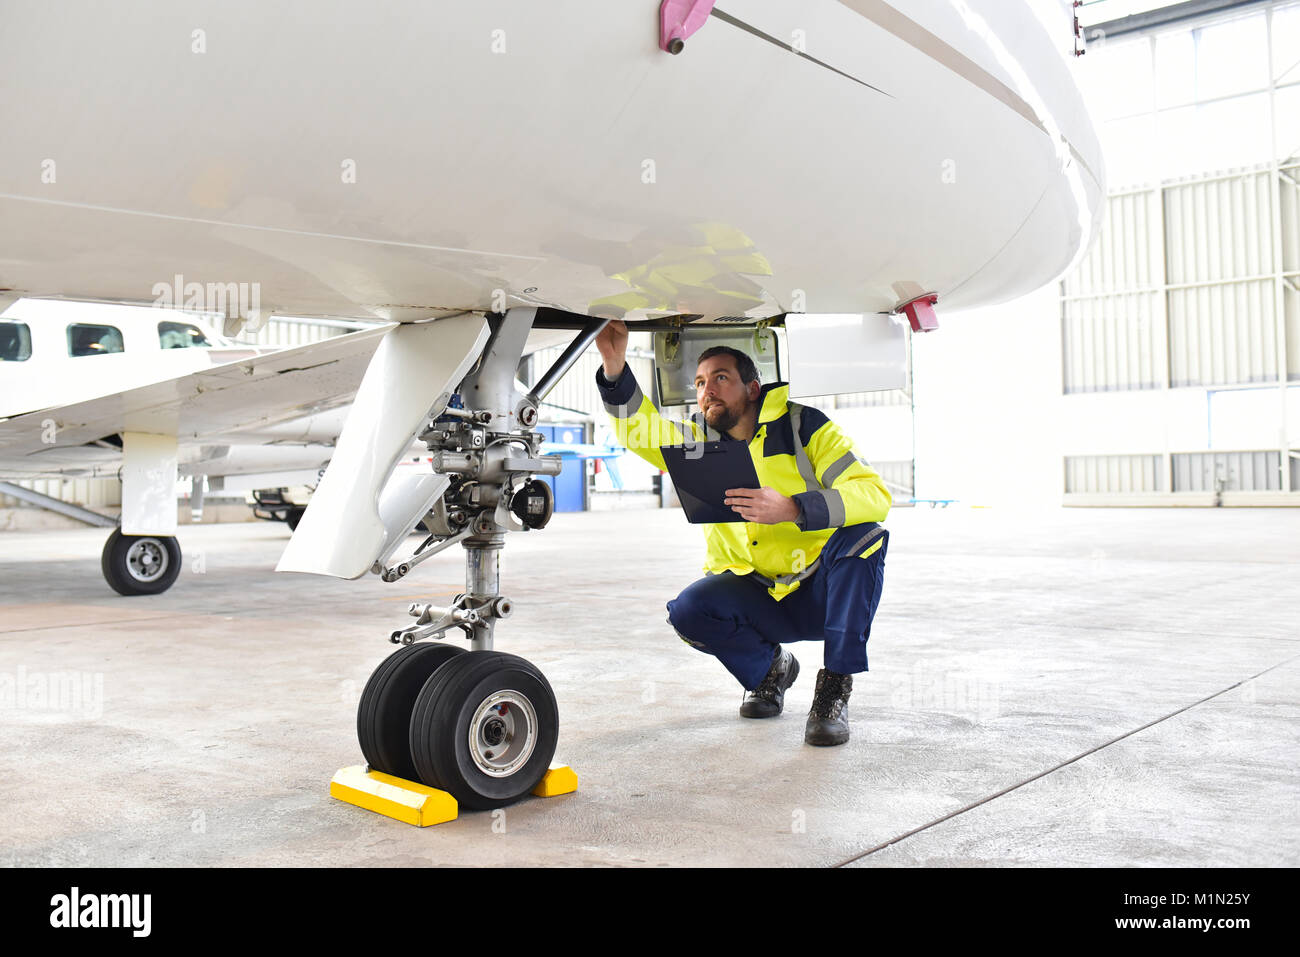 Personal am Boden am Flughafen prüfen Sie das Hydrauliksystem auf das Fahrwerk des Flugzeugs Stockfoto